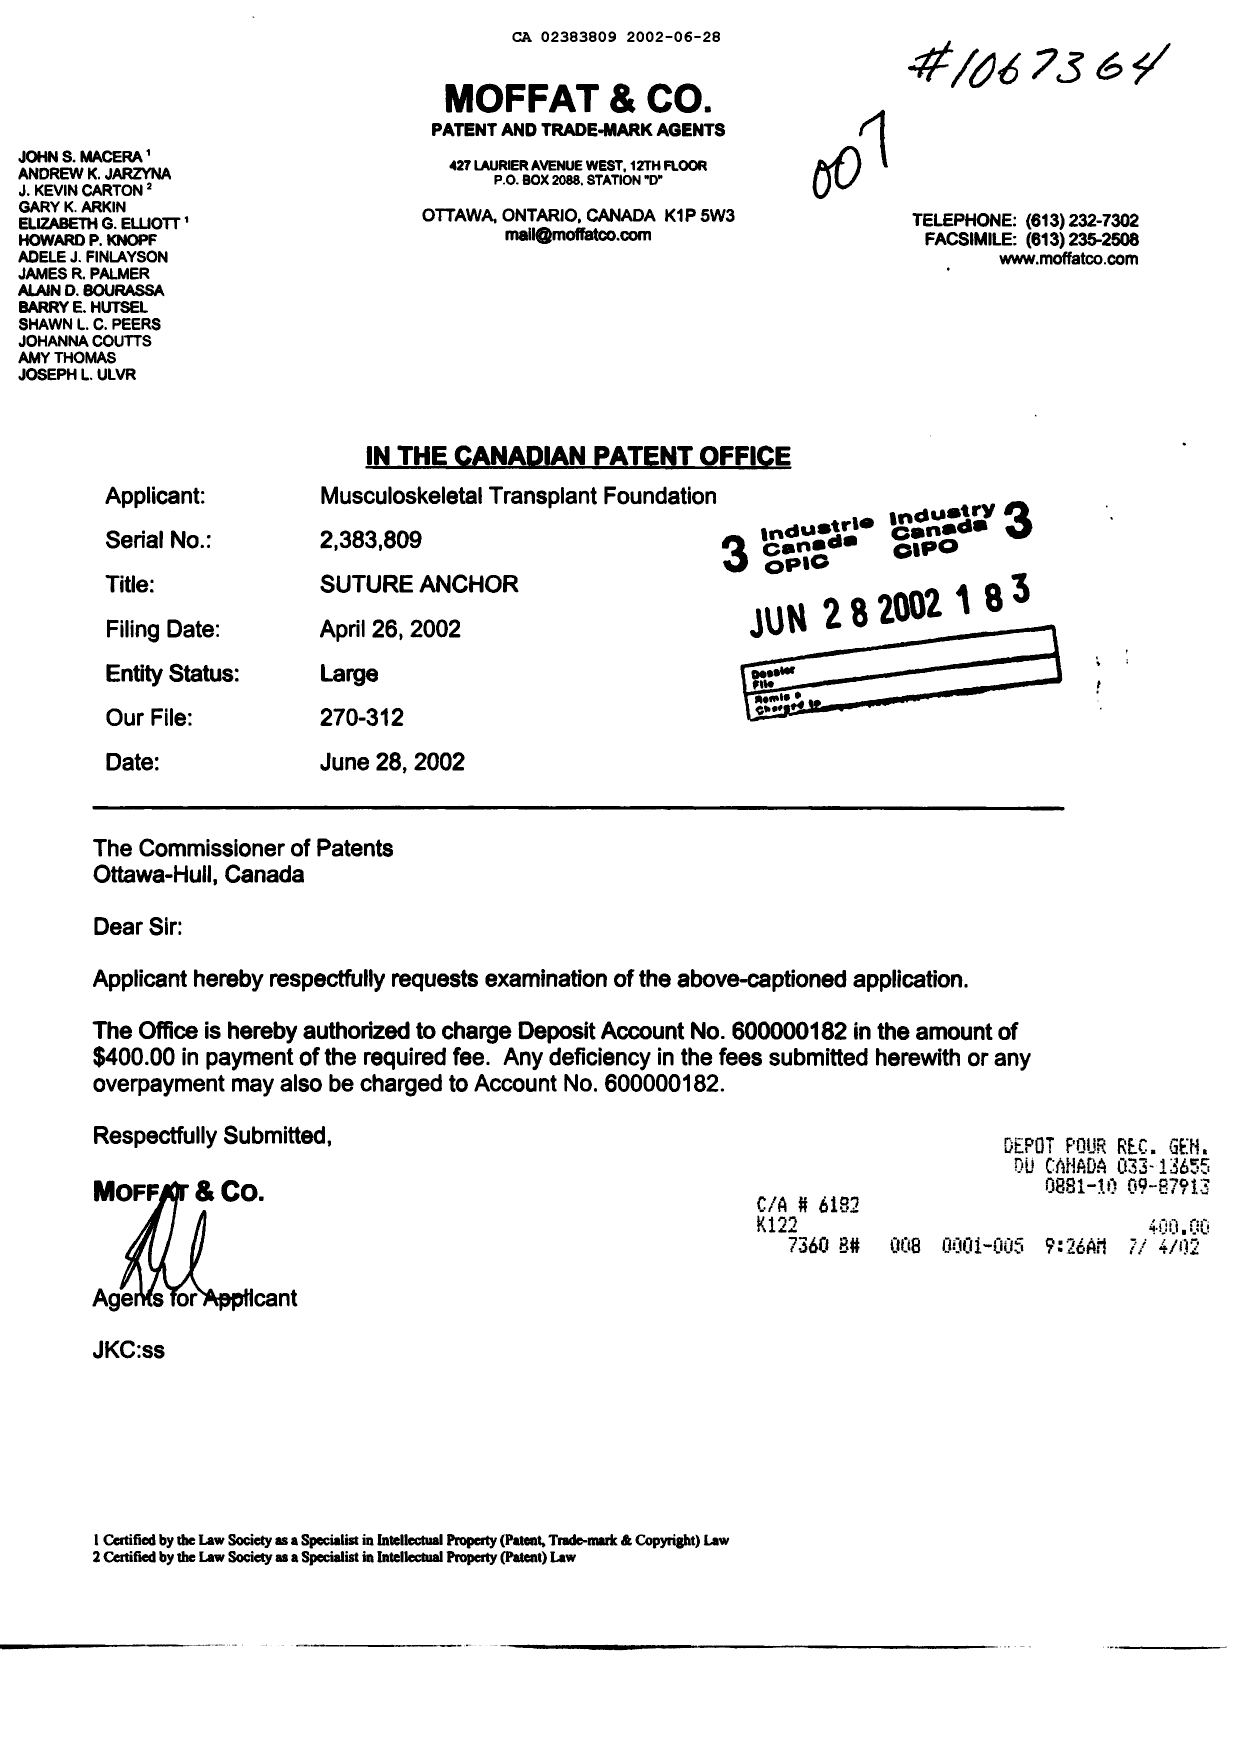 Document de brevet canadien 2383809. Poursuite-Amendment 20011228. Image 1 de 1